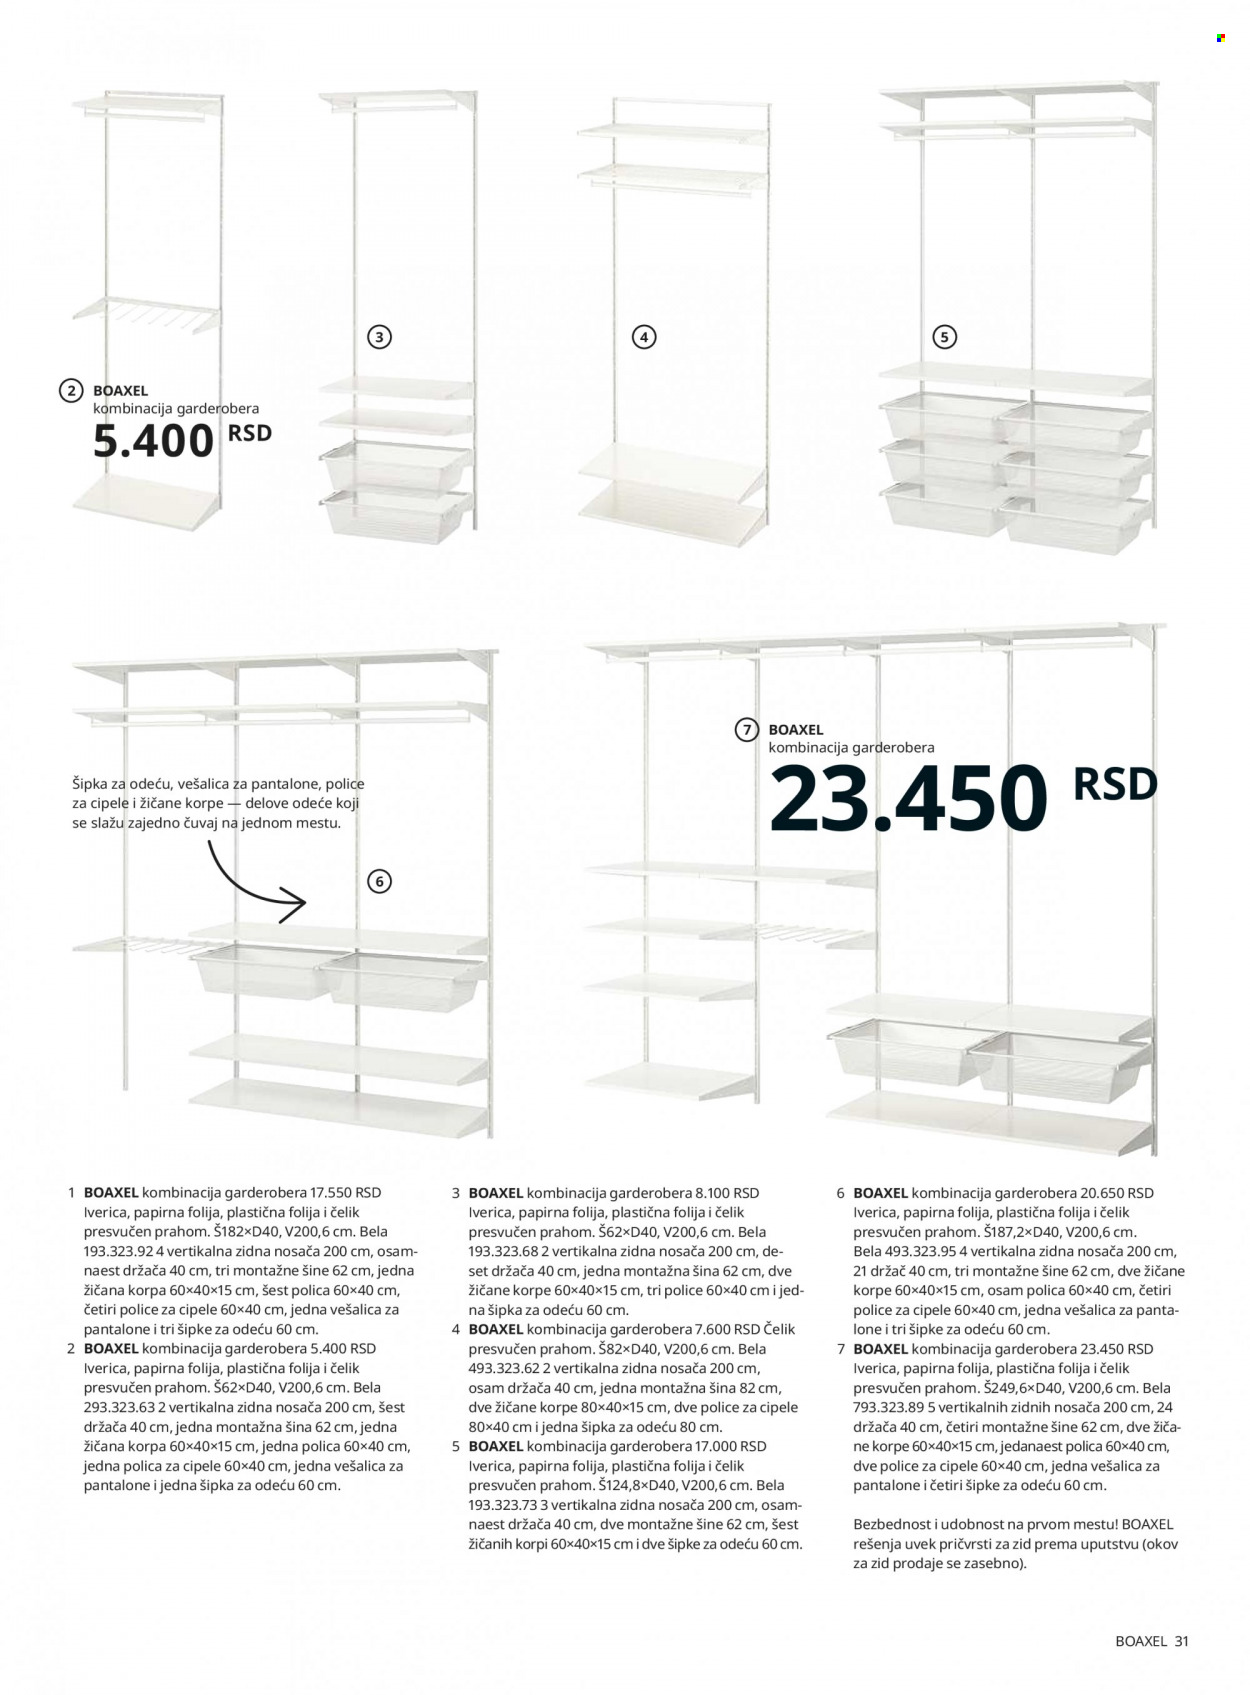 thumbnail - IKEA katalog - Proizvodi na akciji - aluminijumska folija, korpa, polica, komoda, Malm, vešalica, stalak za obuću. Stranica 31.